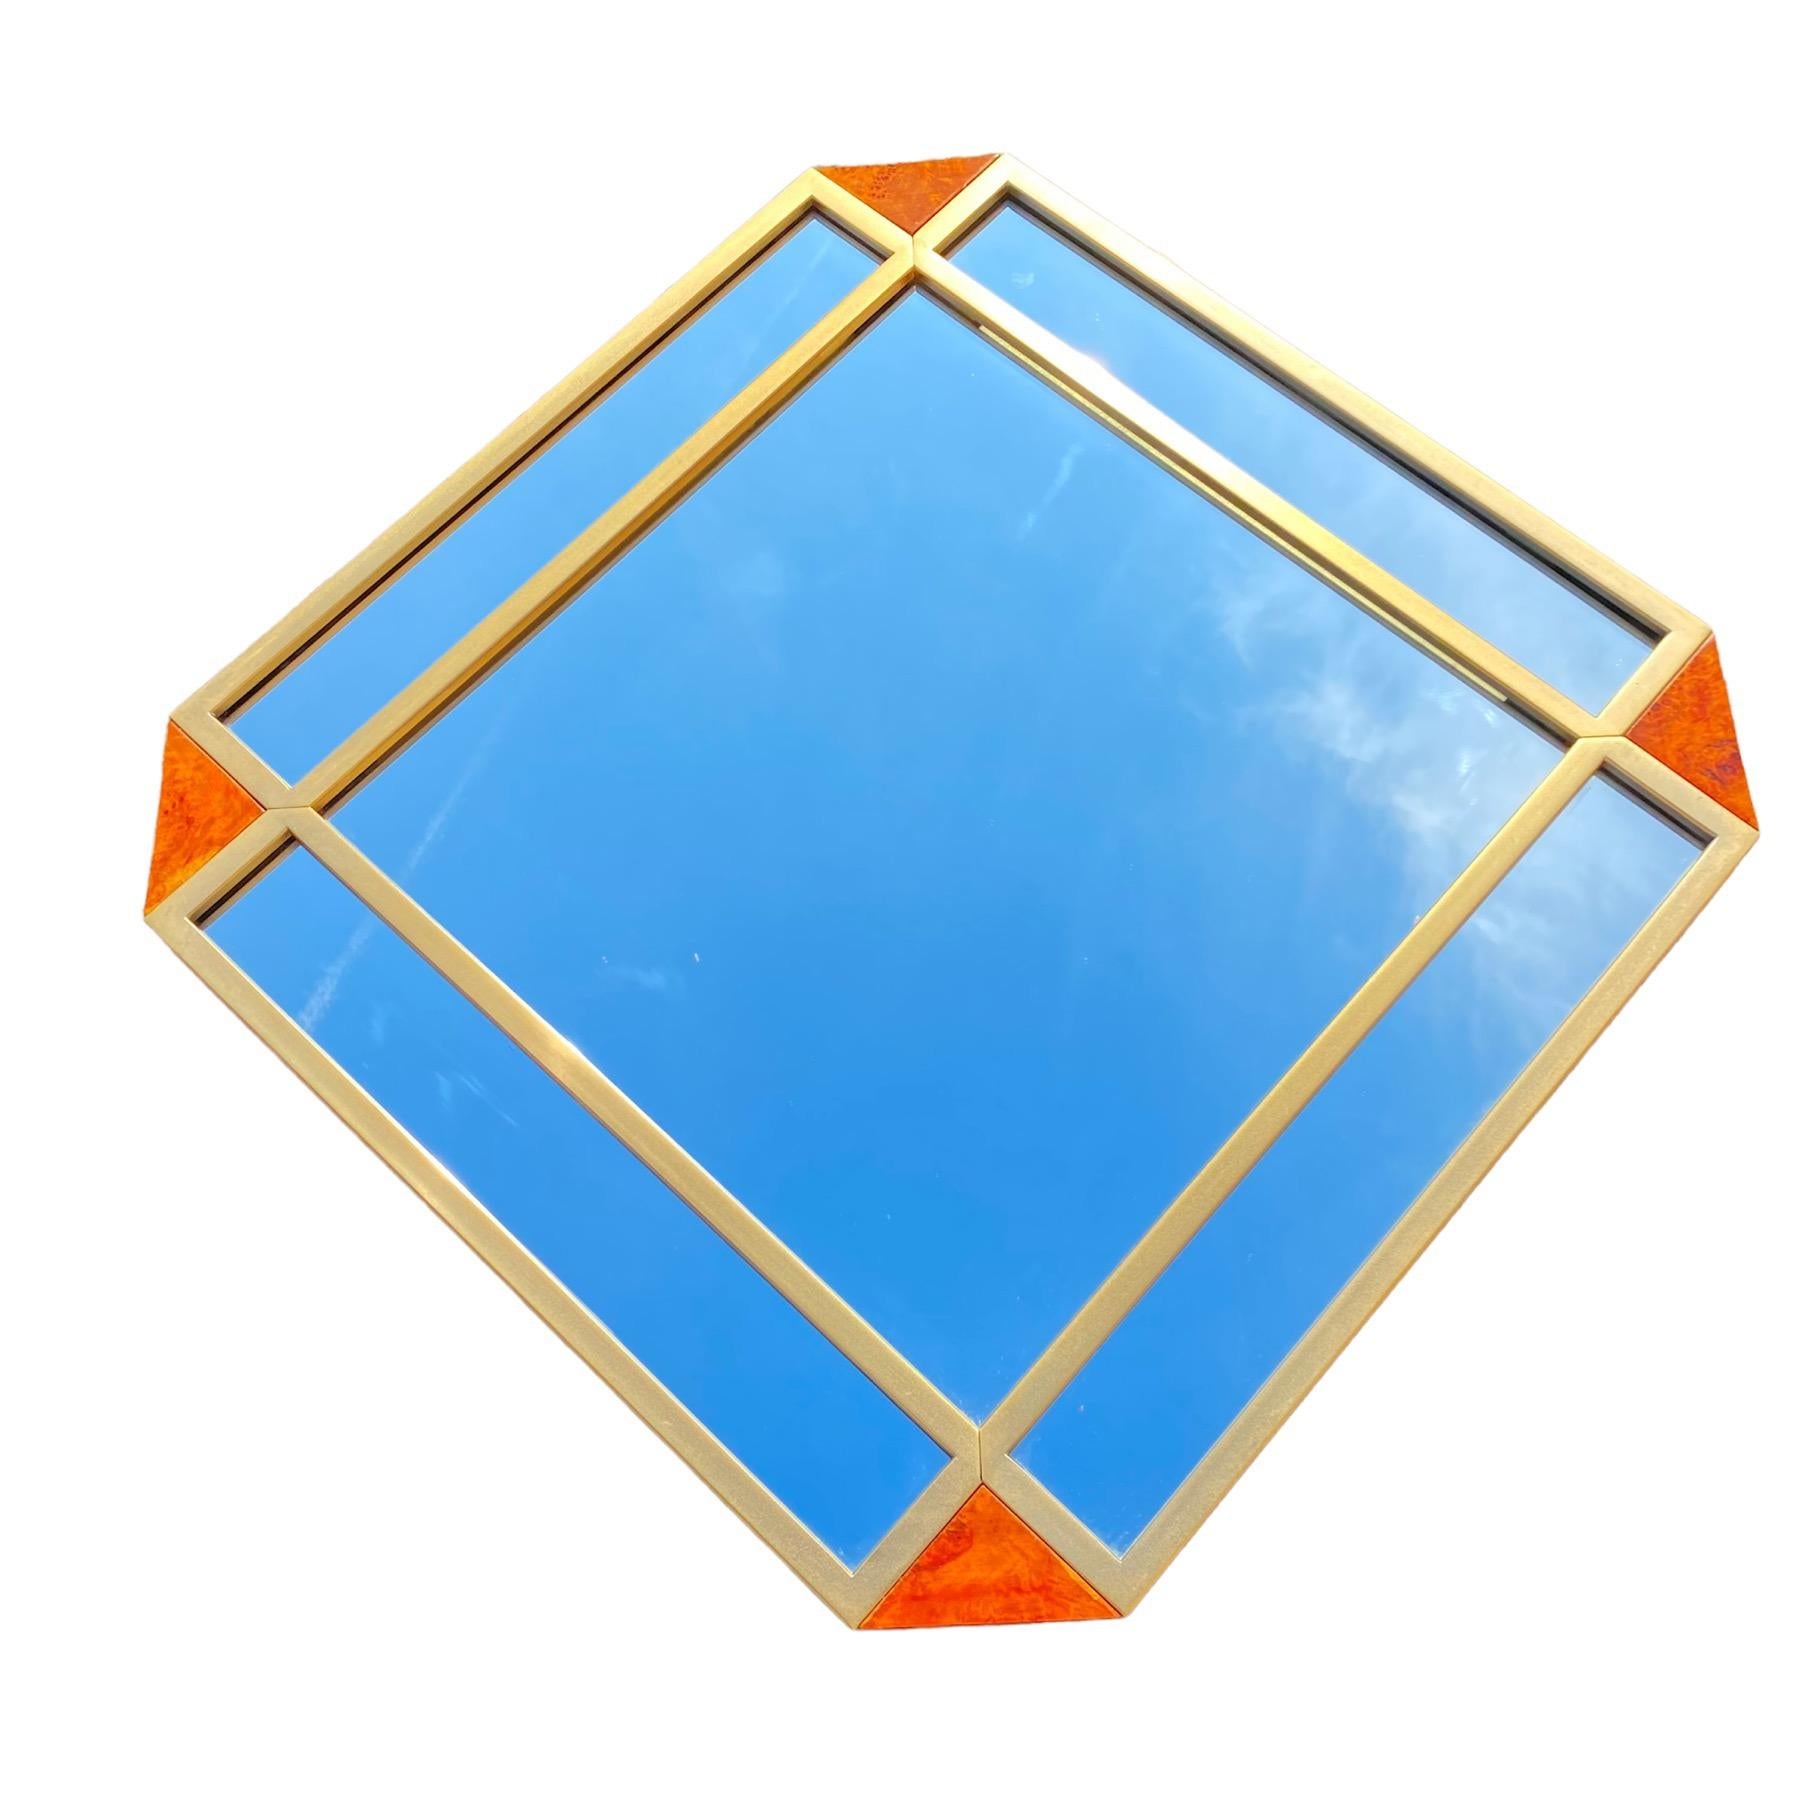 Wunderschöner Spiegel 'Mirette', entworfen von Gianluigi Gorgoni für Fratelli Turri im Jahr 1974, gehört zur Serie 'Privilege' und wurde in Zusammenarbeit mit Casa Vogue entworfen.
Der Spiegel besteht aus Holz mit Thuja-Furnier in den Ecken, das auf